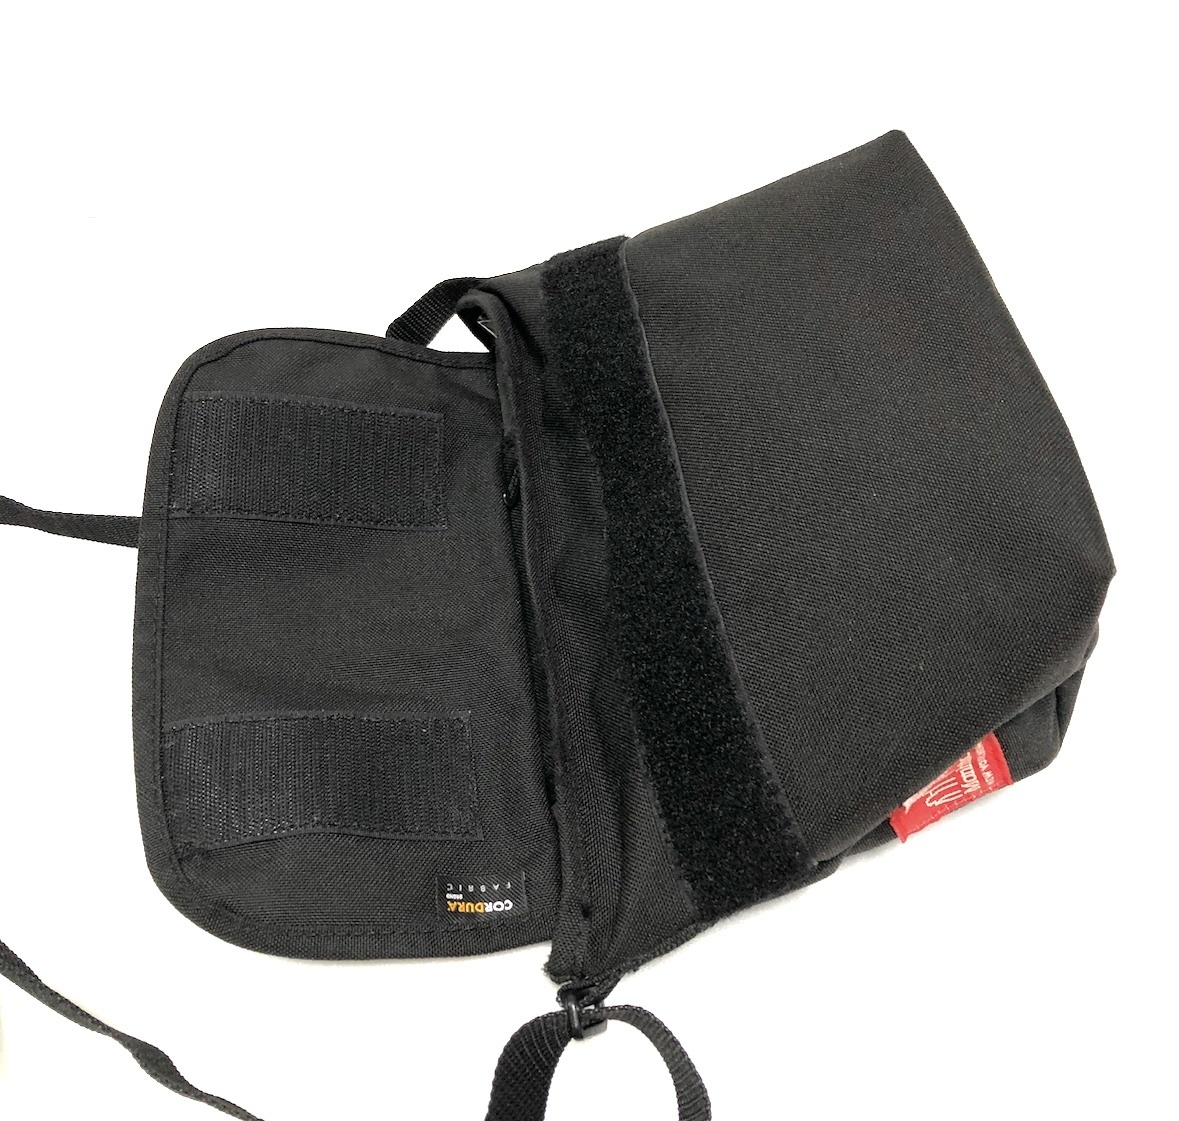  Manhattan Poe te-ji×DISNEY limitation messenger bag XS Mickey 183 collaboration Disney shoulder bag pouch print 